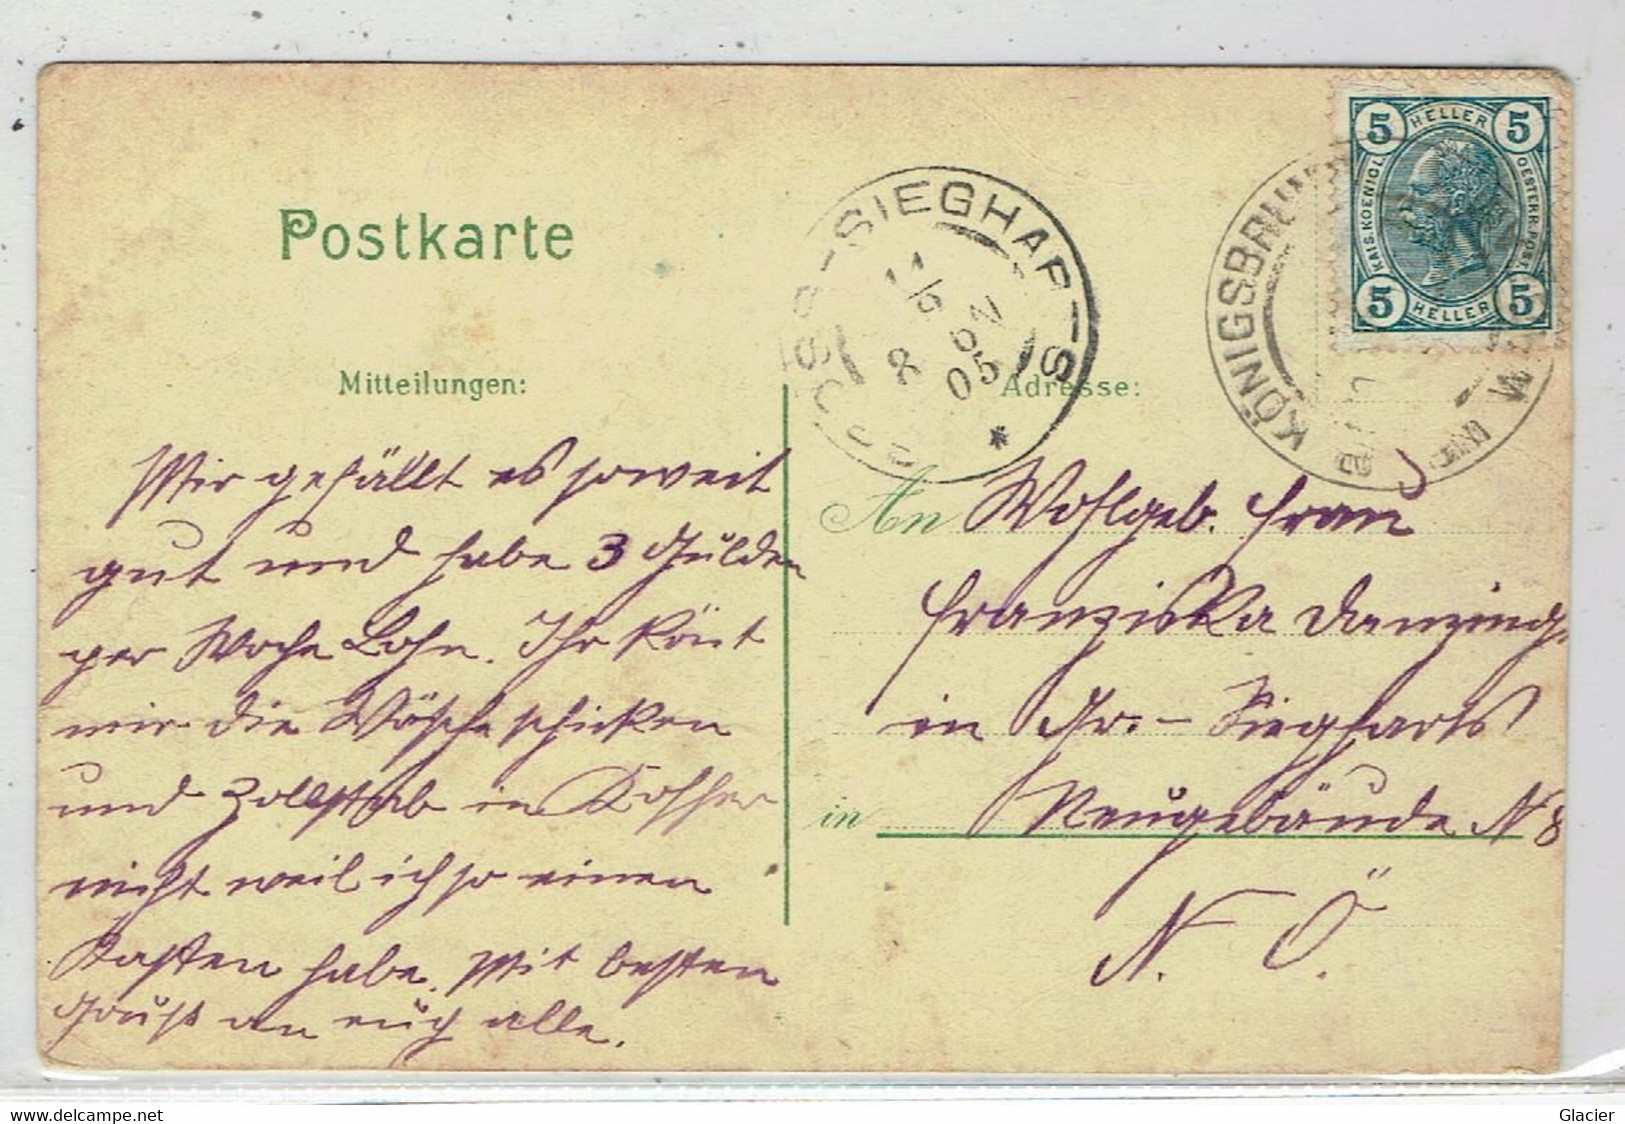 Gruss Aus Königsbrunn Am Wagram - N.Österreich - Doppeltreiter's Gasthaus U. Handlung - Rathaus Ges.1905 - Tulln